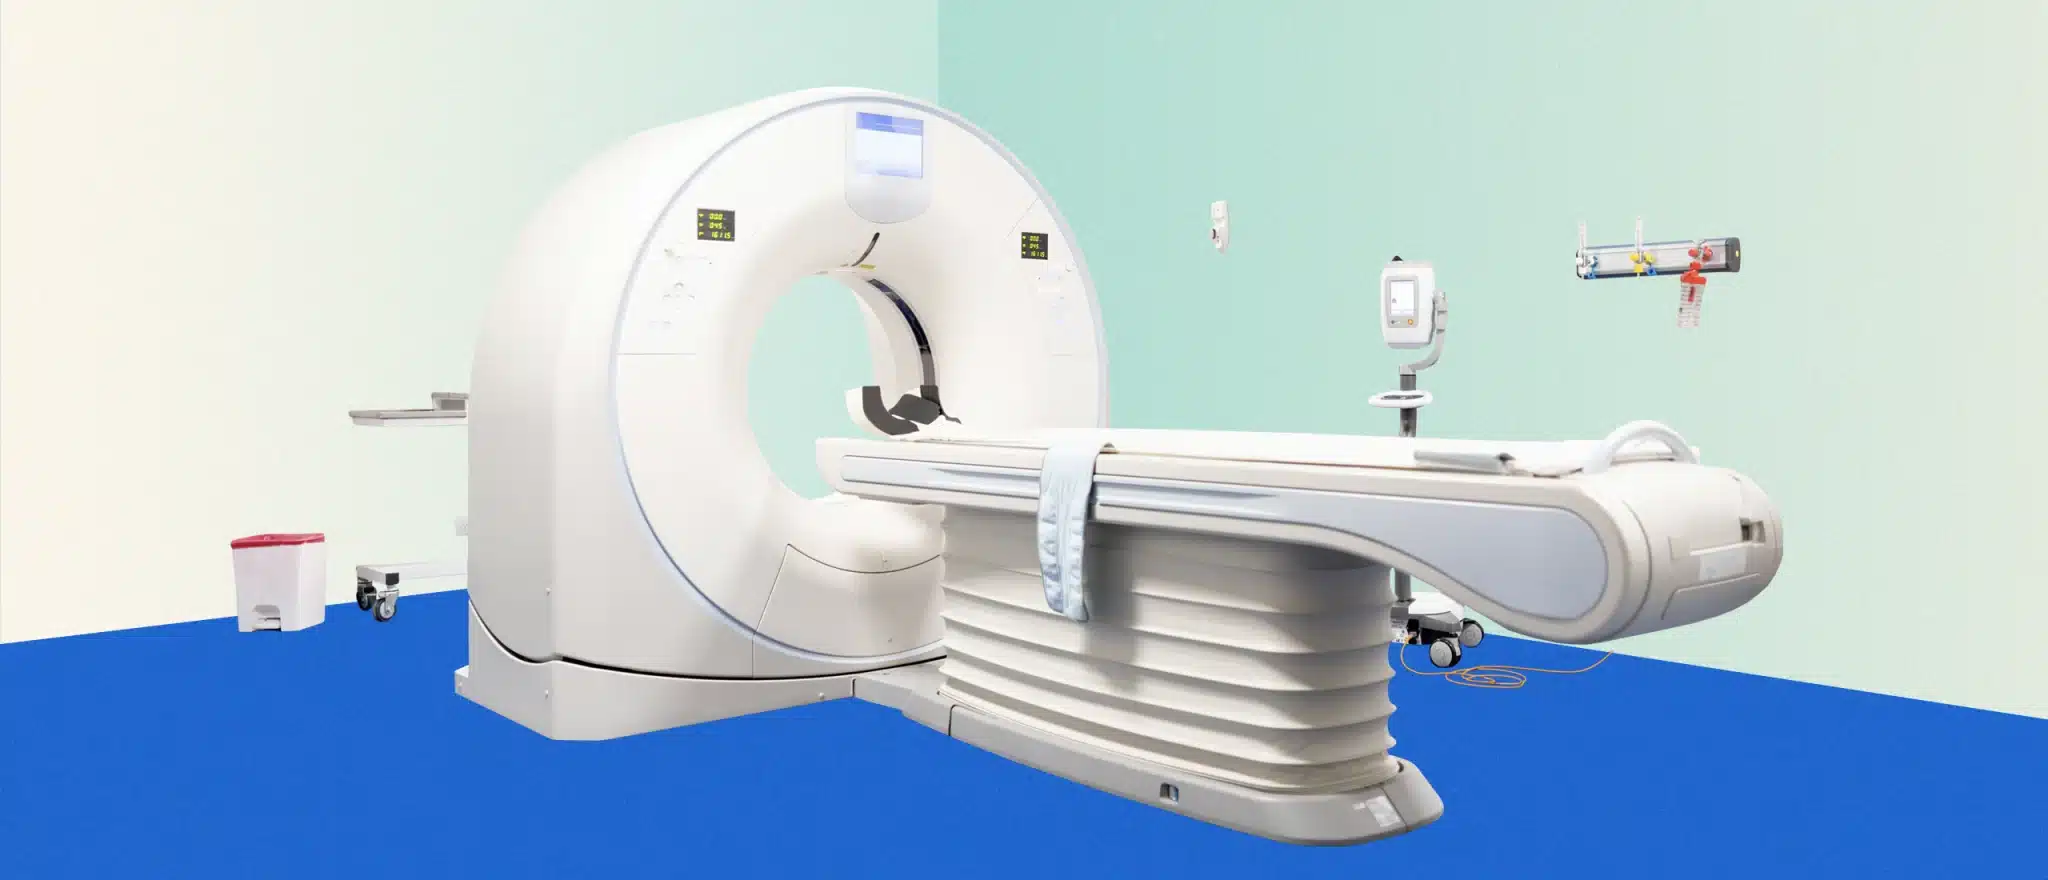 David Sinclair Got a $2,500 “Preventative” MRI. Here’s What It Revealed